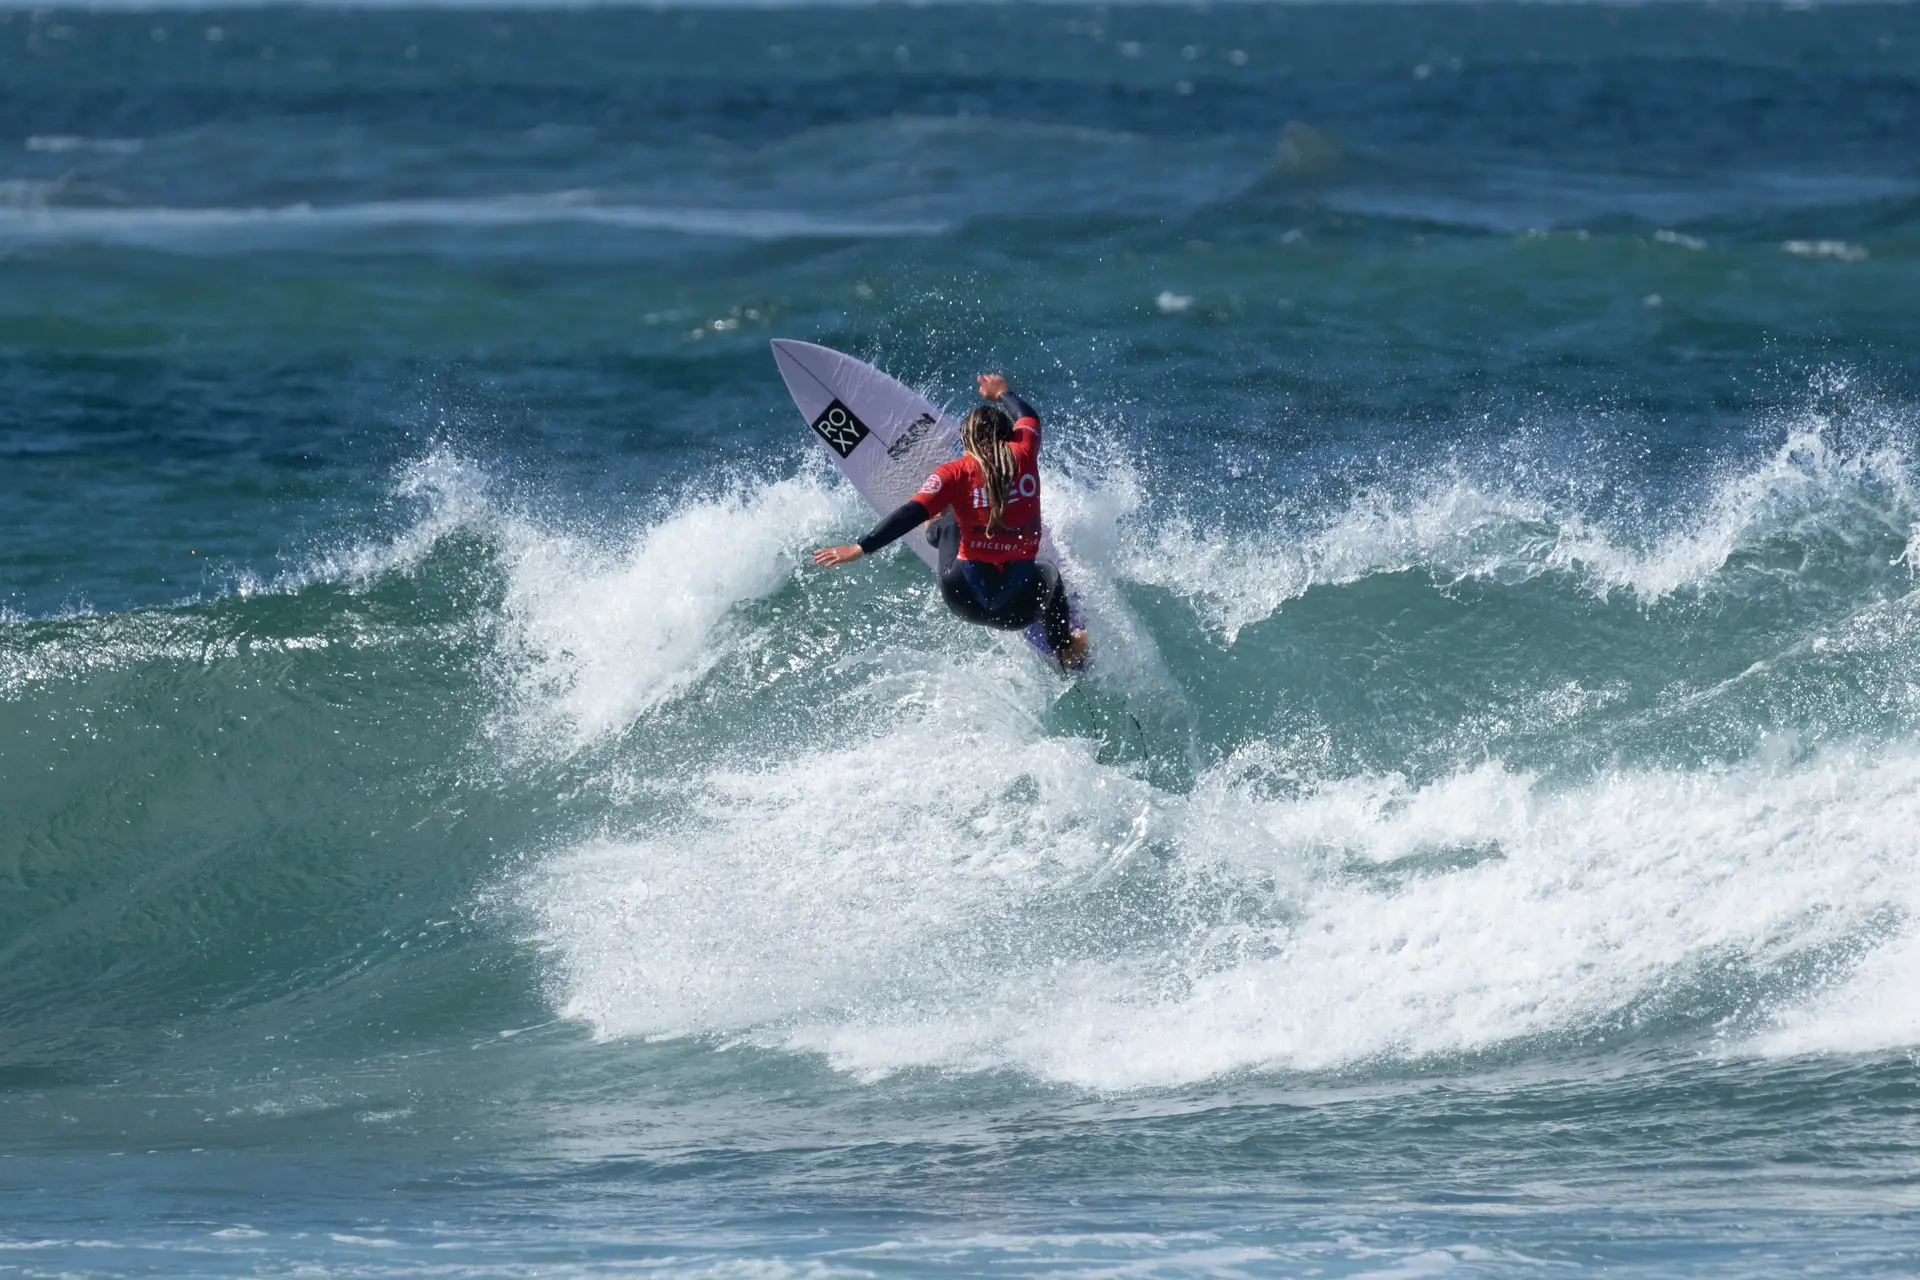 Francisca Veselko tem 18 anos, é campeã nacional de surf e agora